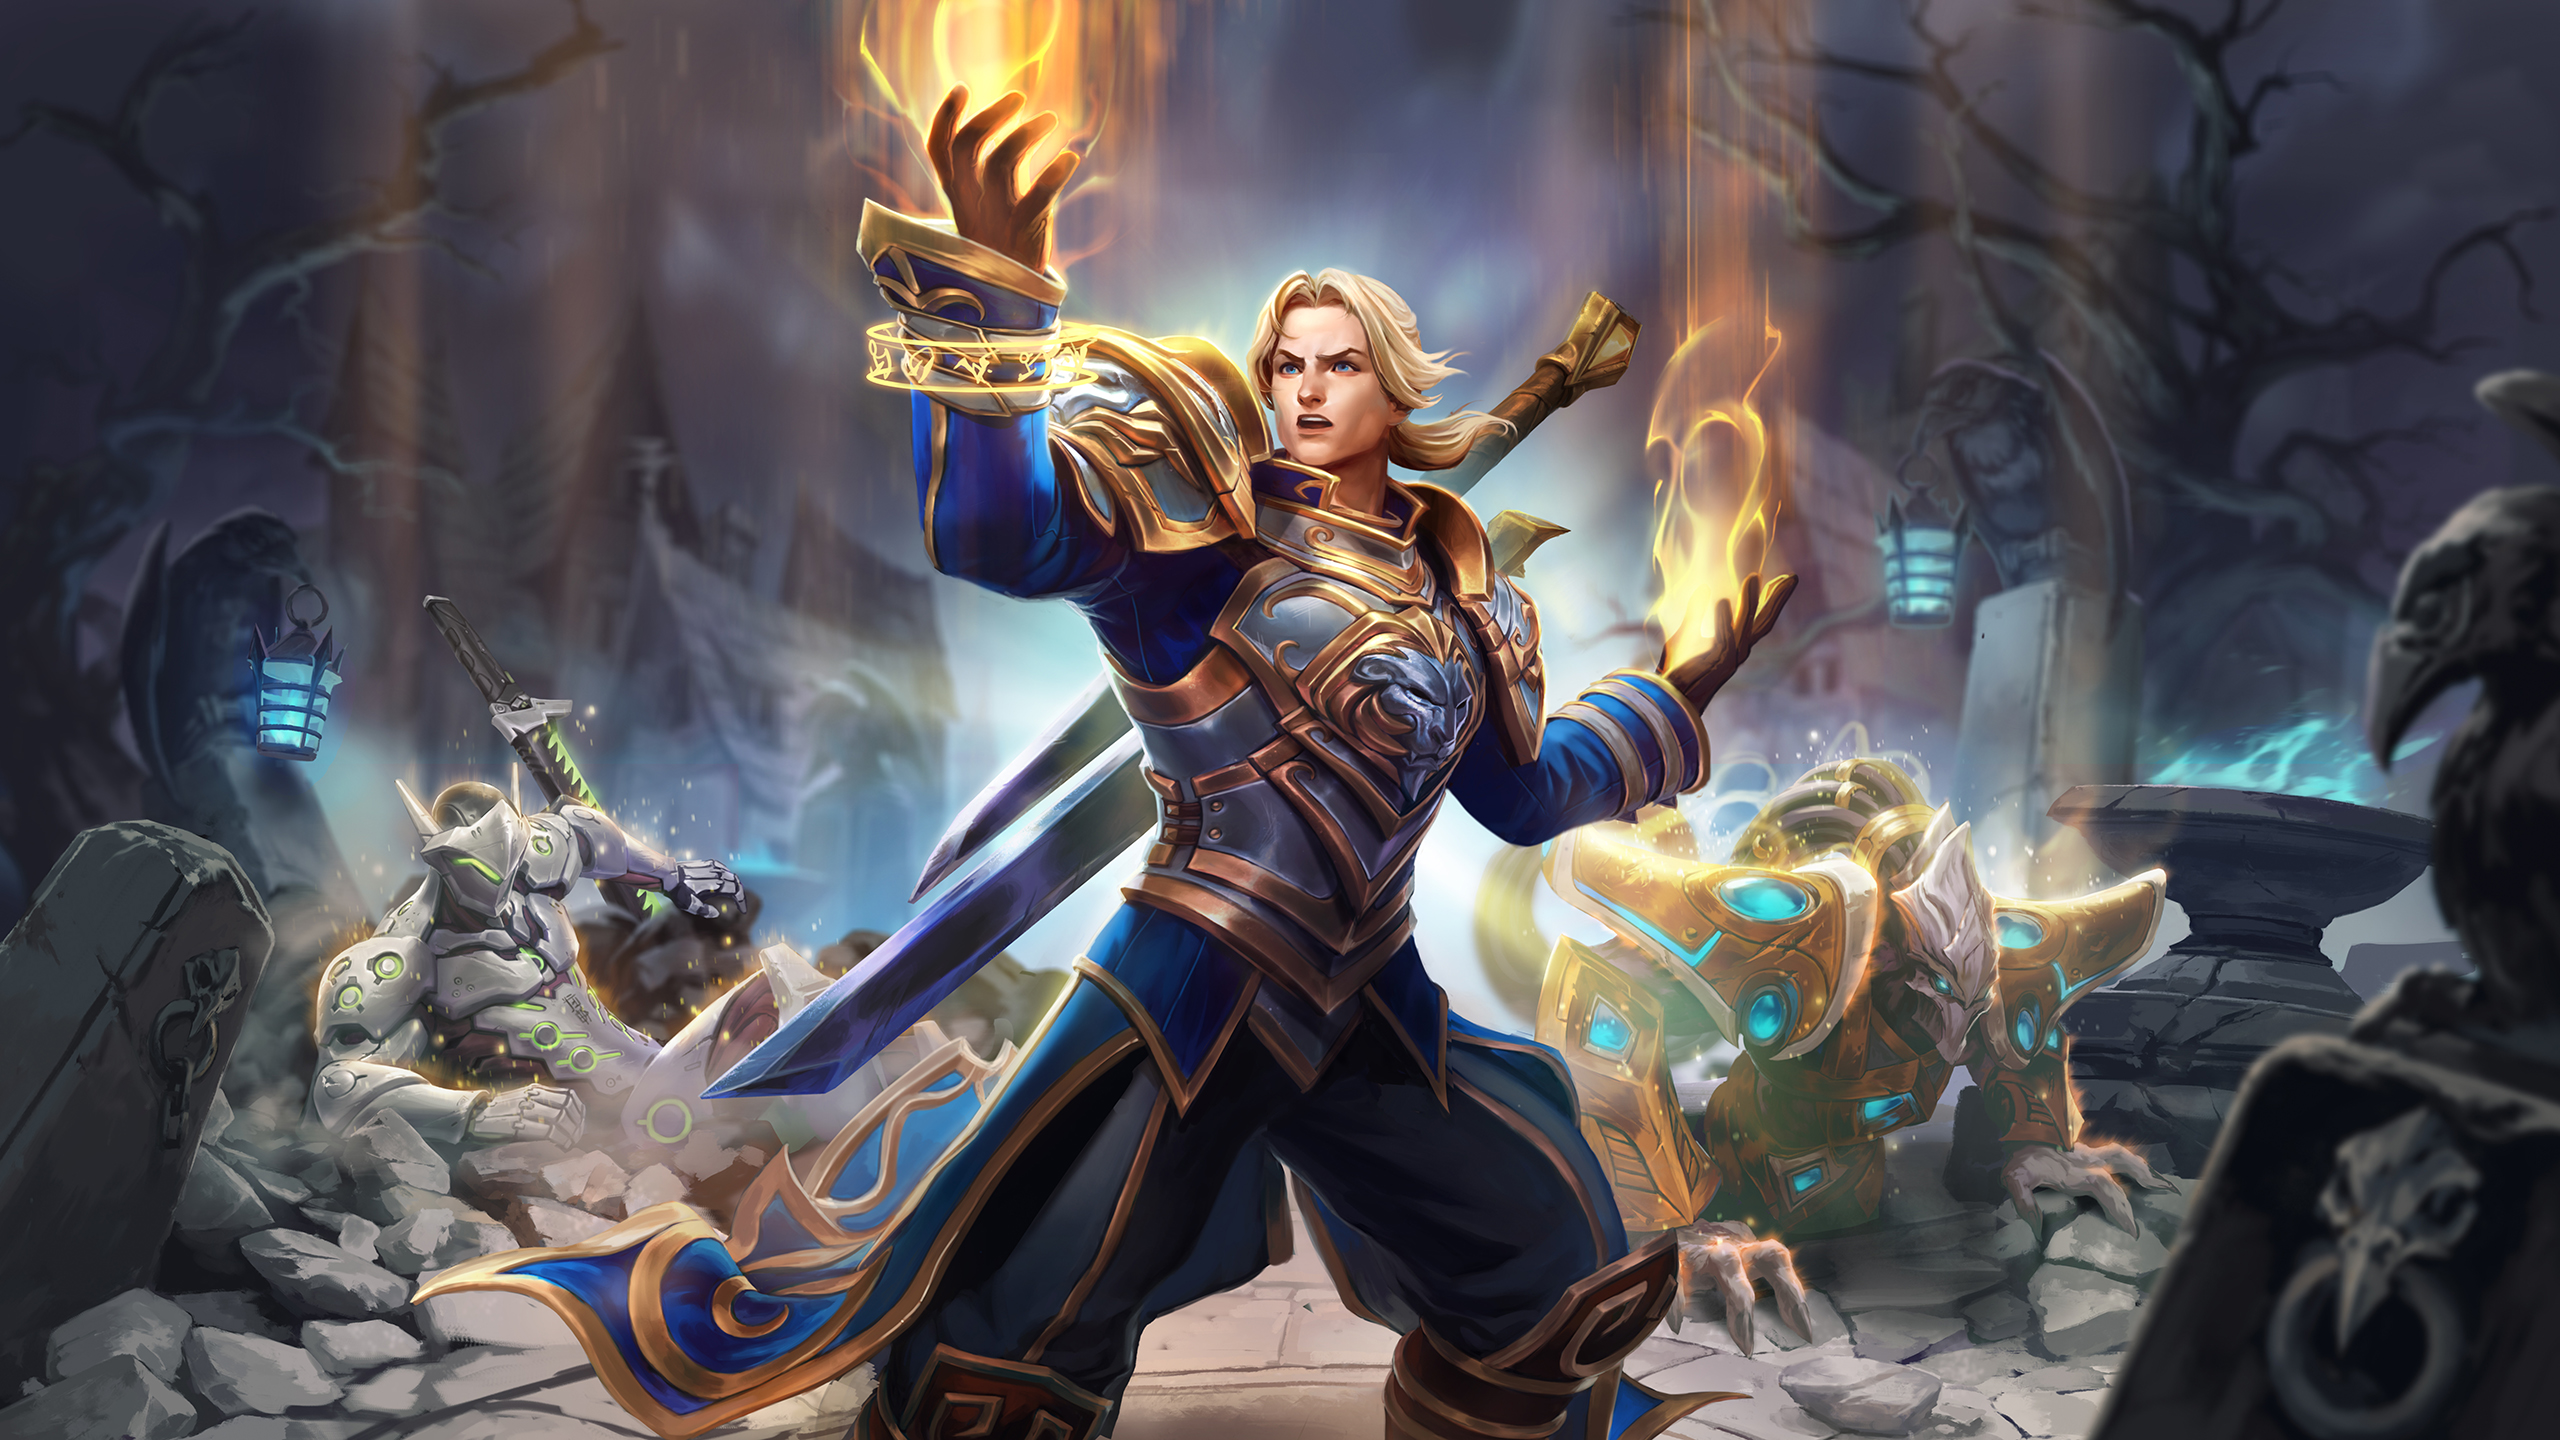 Heroes Of The Storm Video Game Art Blizzard Entertainment Hots Digital Art Anduin Wrynn Tassadar Gen 2560x1440